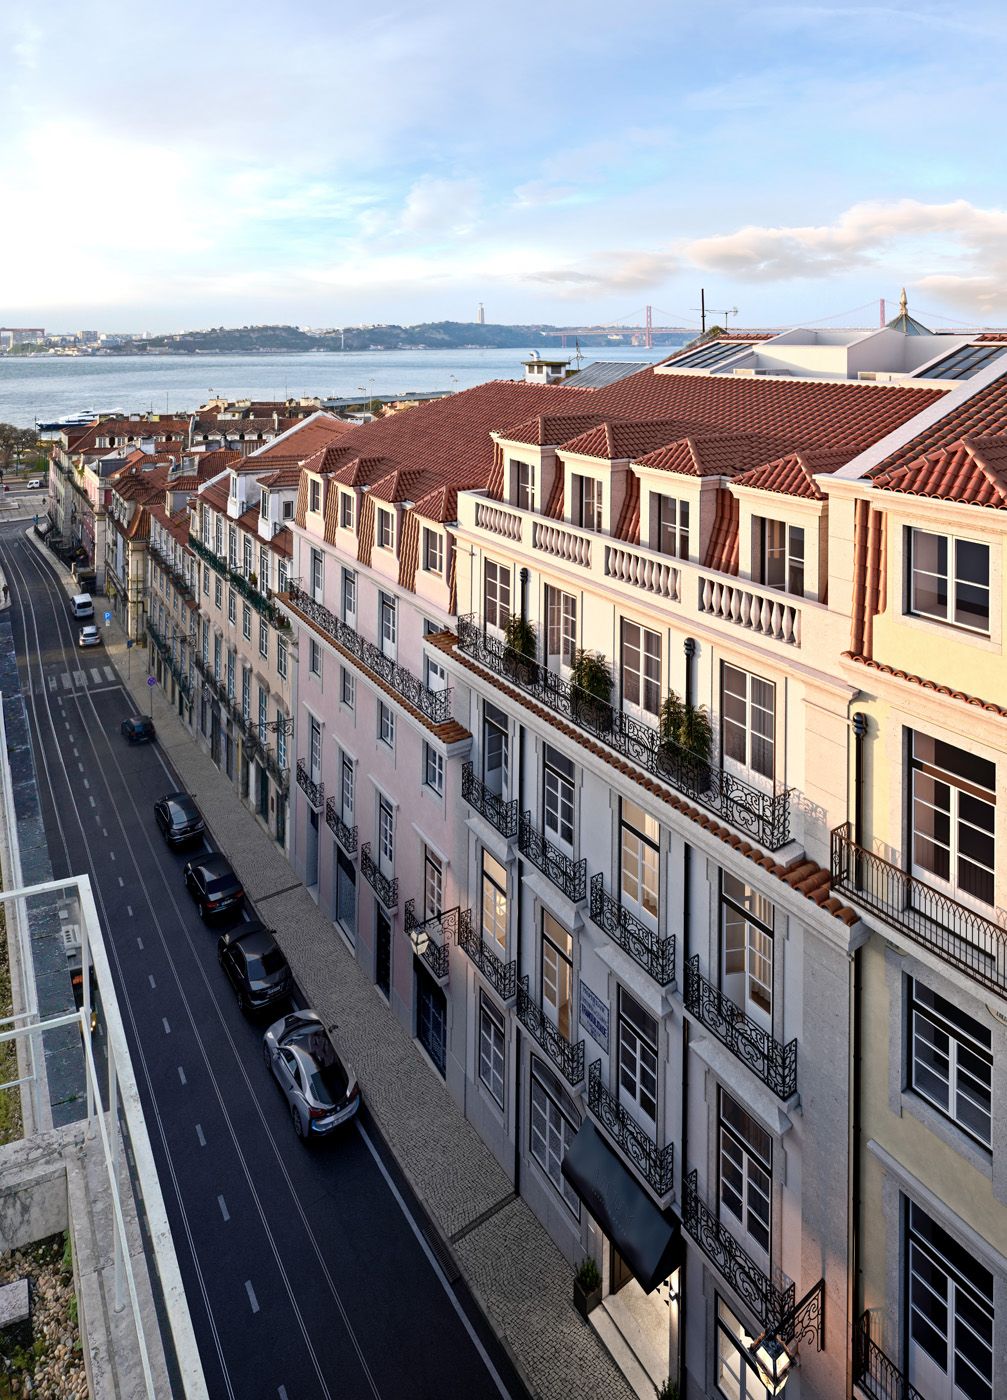 Apartamento de 2 quartos À venda em Lisboa, Área Metropolitana de Lisboa